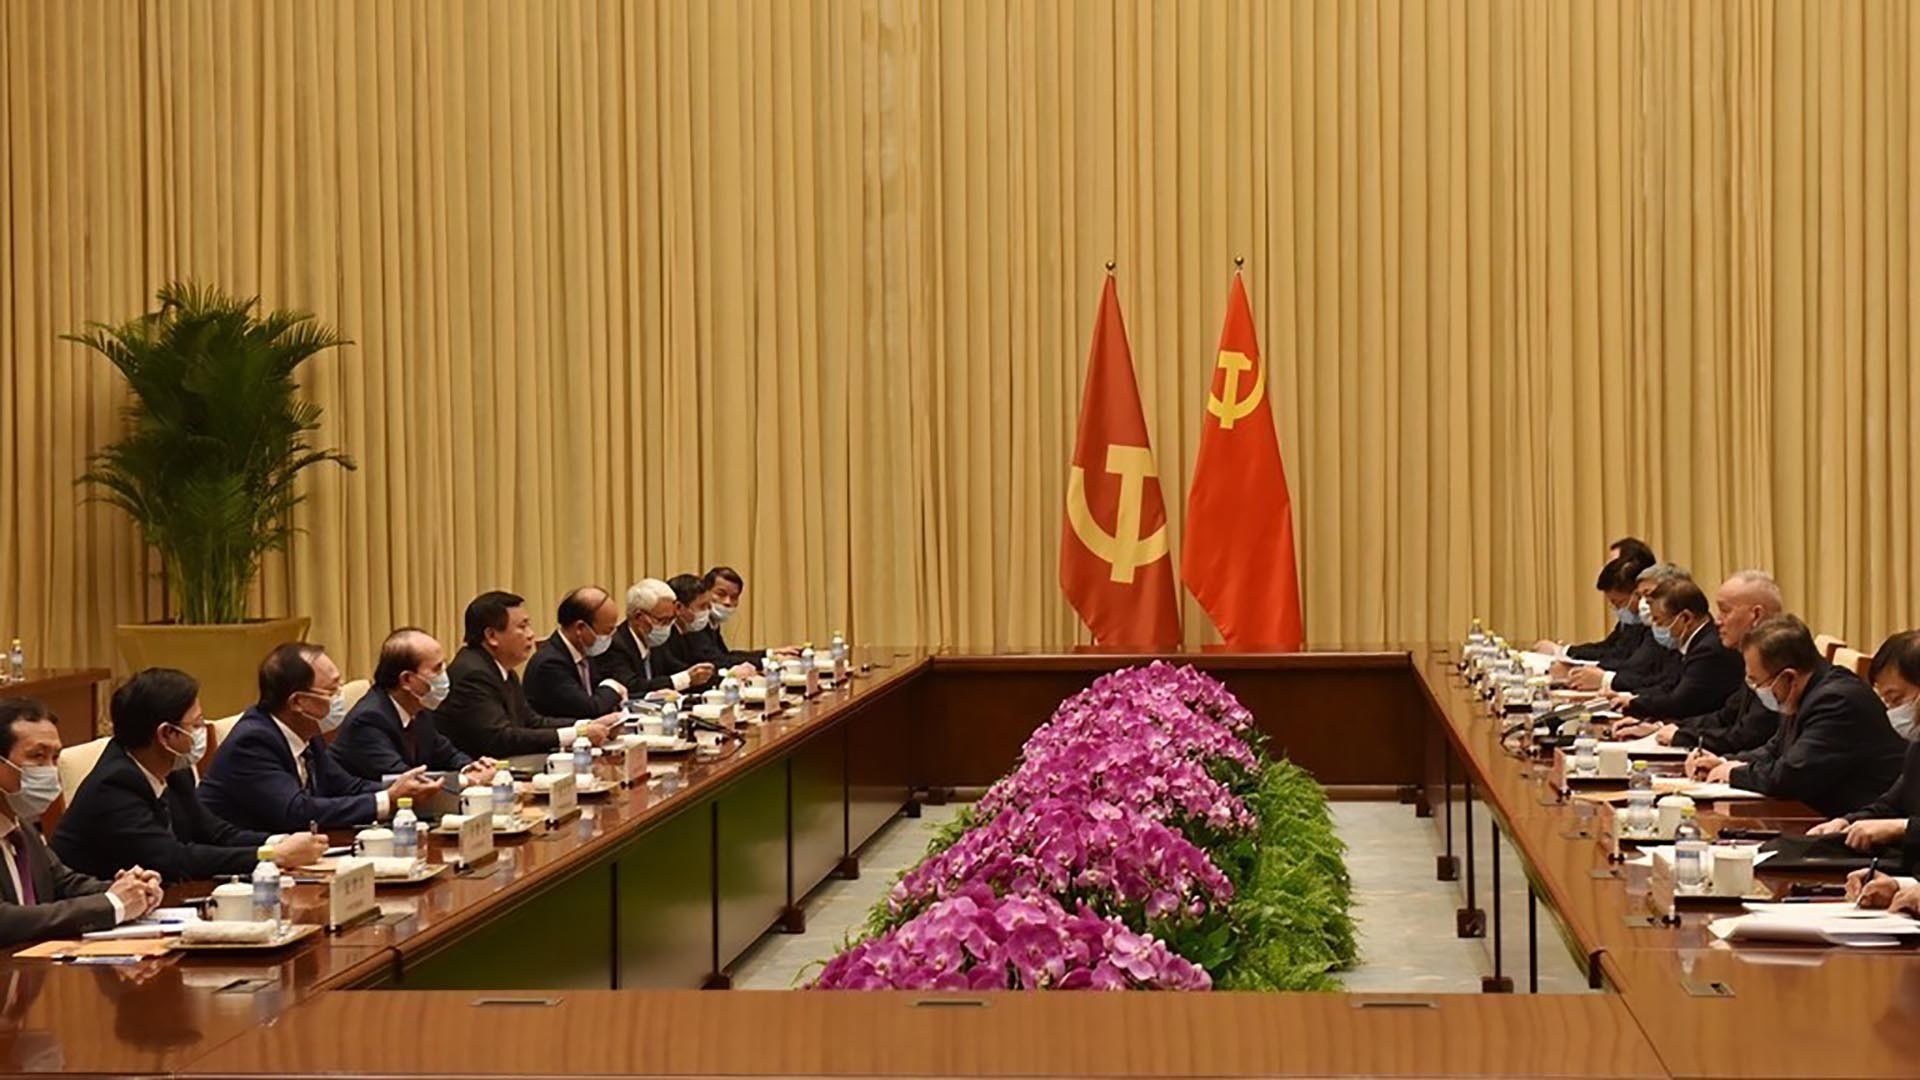 Đồng chí Nguyễn Xuân Thắng và đoàn đại biểu Đảng Cộng sản hội đàm với đồng chí Thái Kỳ và đoàn đại biểu Đảng Cộng sản Trung Quốc. (Nguồn: TTXVN)